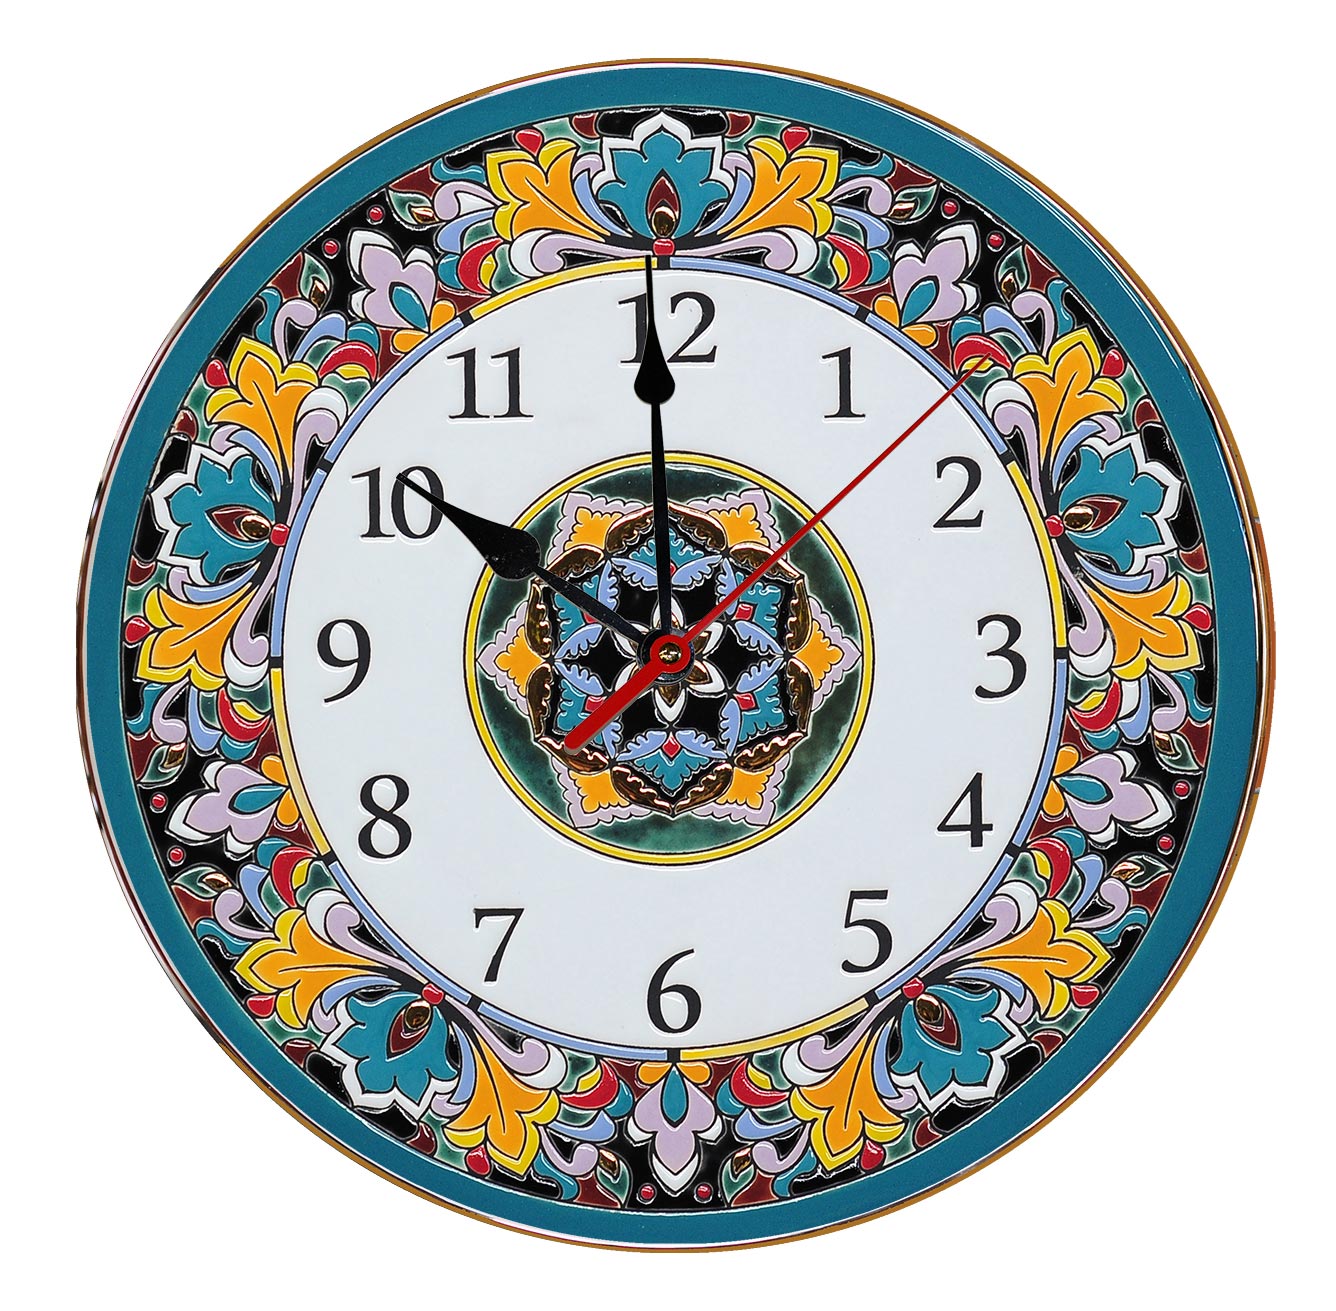 Модели часов настенных. Часы настенные. Часы круглые. Декоративные часы на стену. Очень красивые настенные часы.